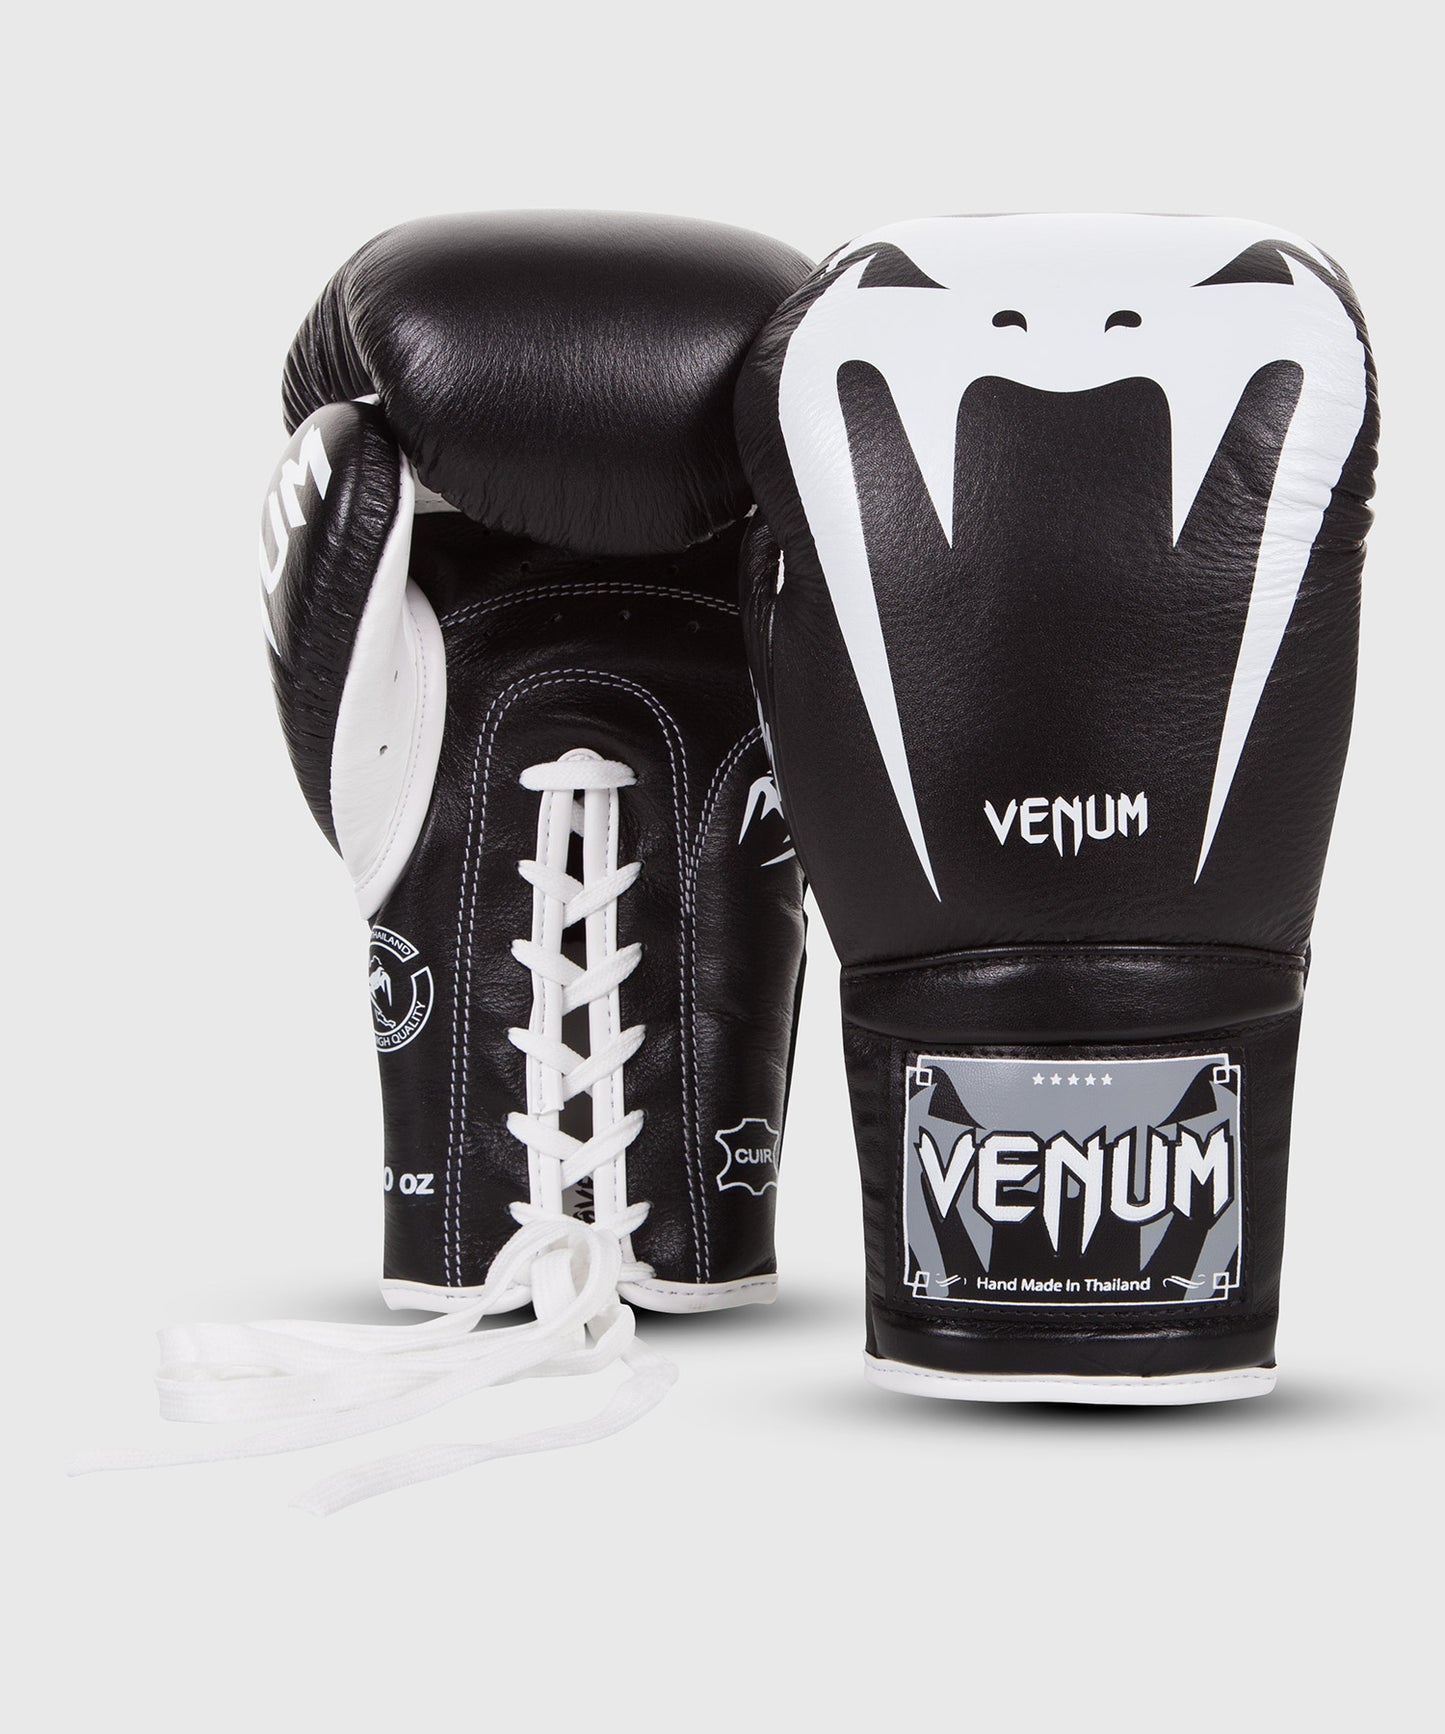 Venum Giant 3.0 Bokshandschoenen - nappaleer - met veters - Zwart